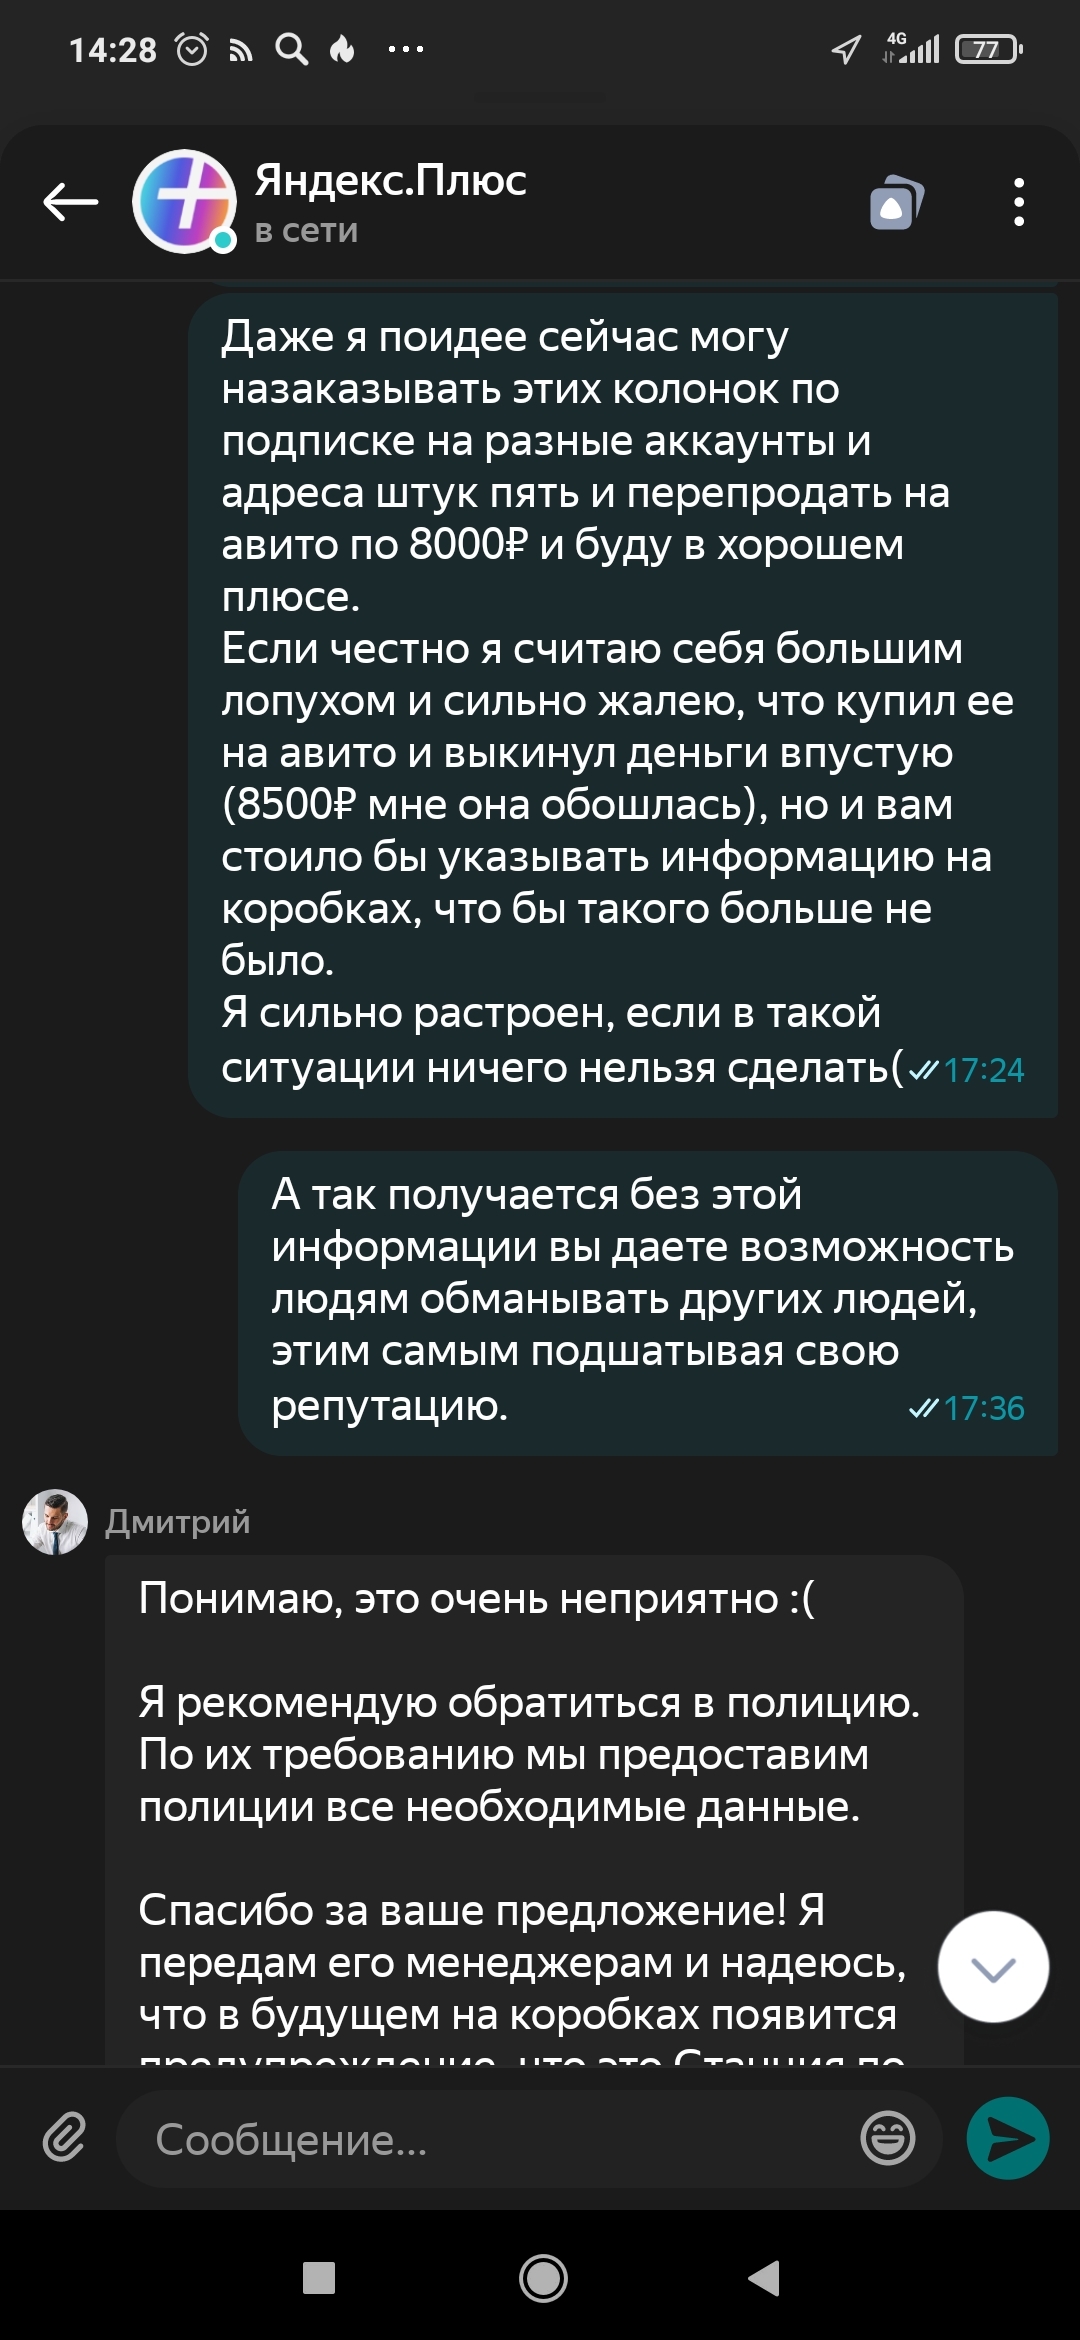 Яндекс Алиса Узнать По Фото